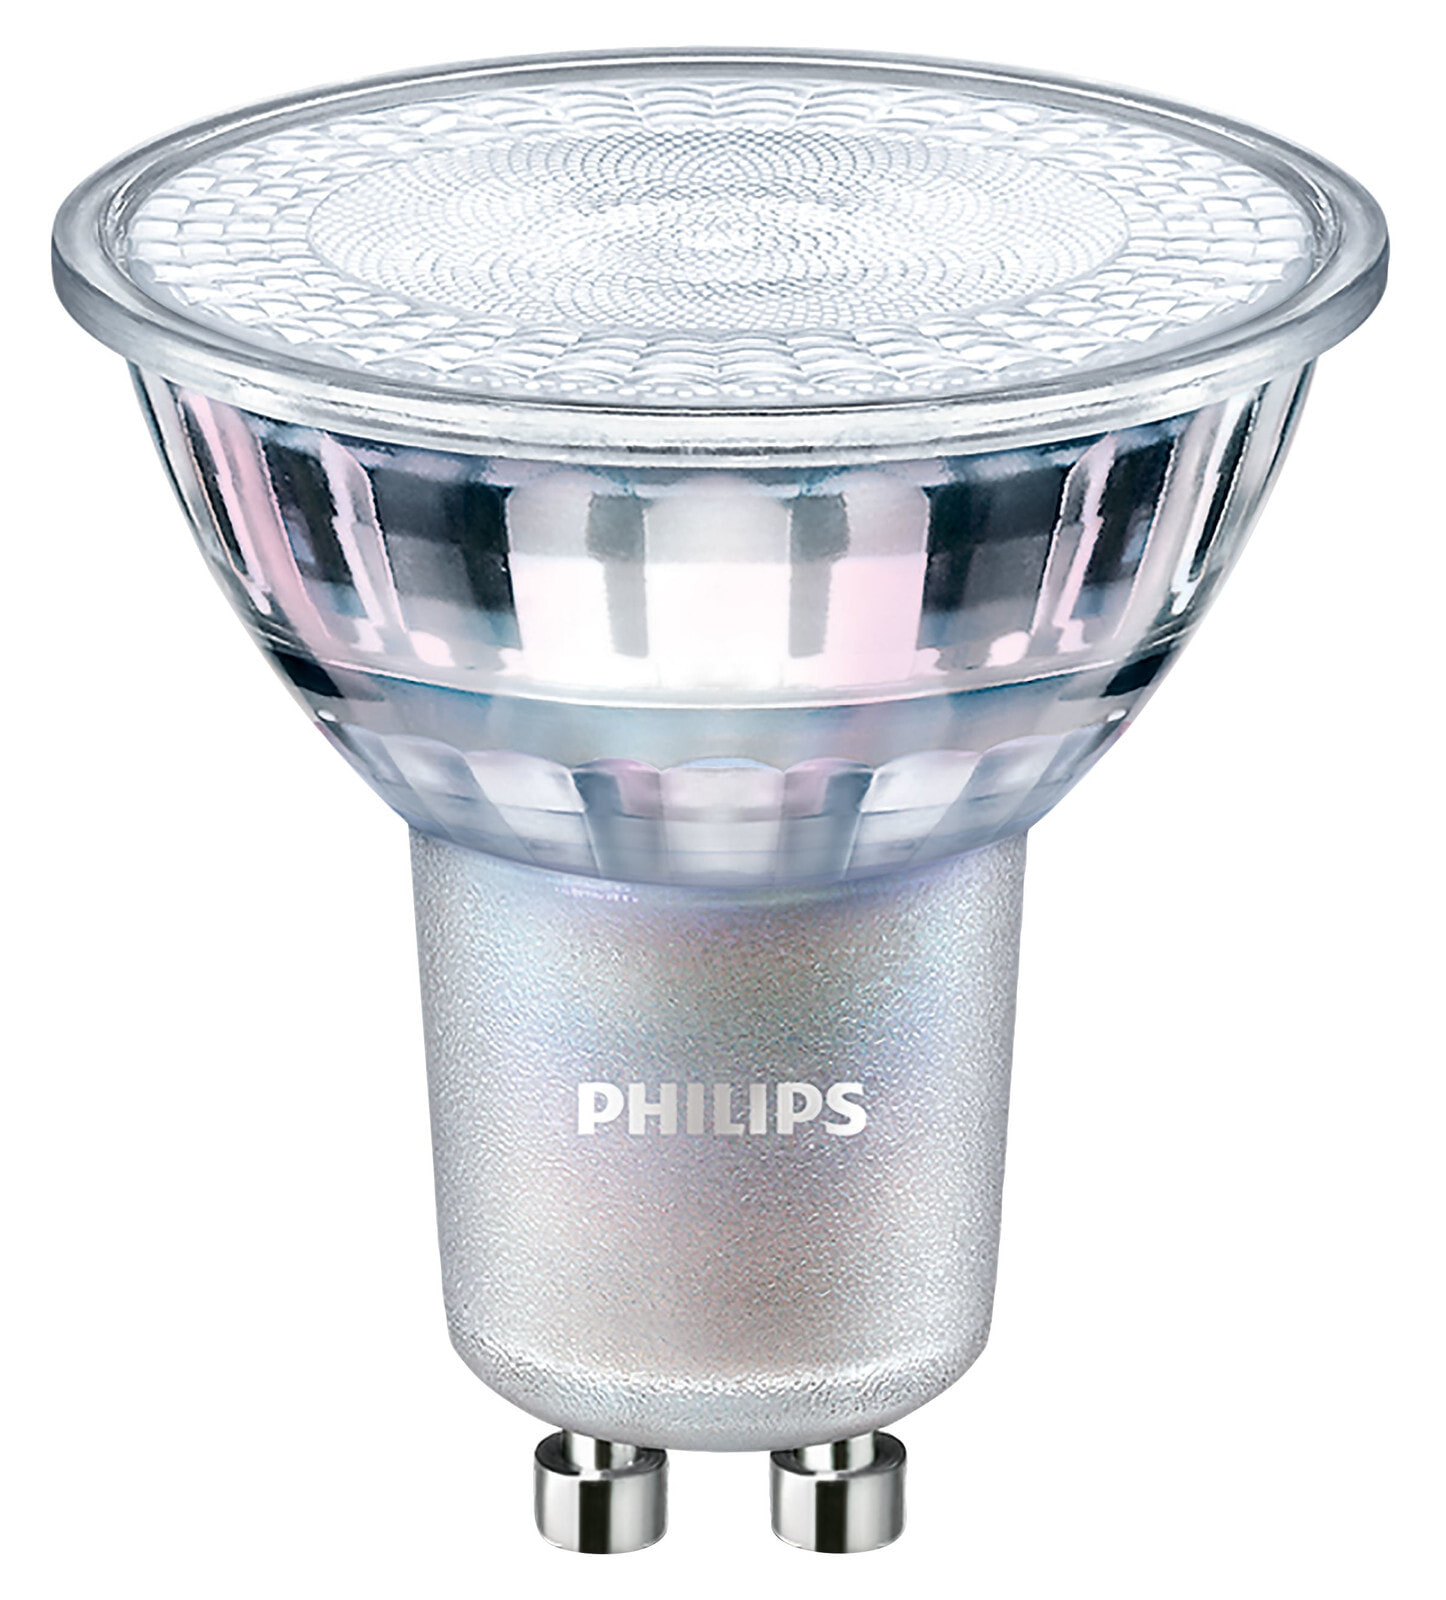 Philips Master LEDspot MV LED лампа 4,9 W GU10 A+ 70811800